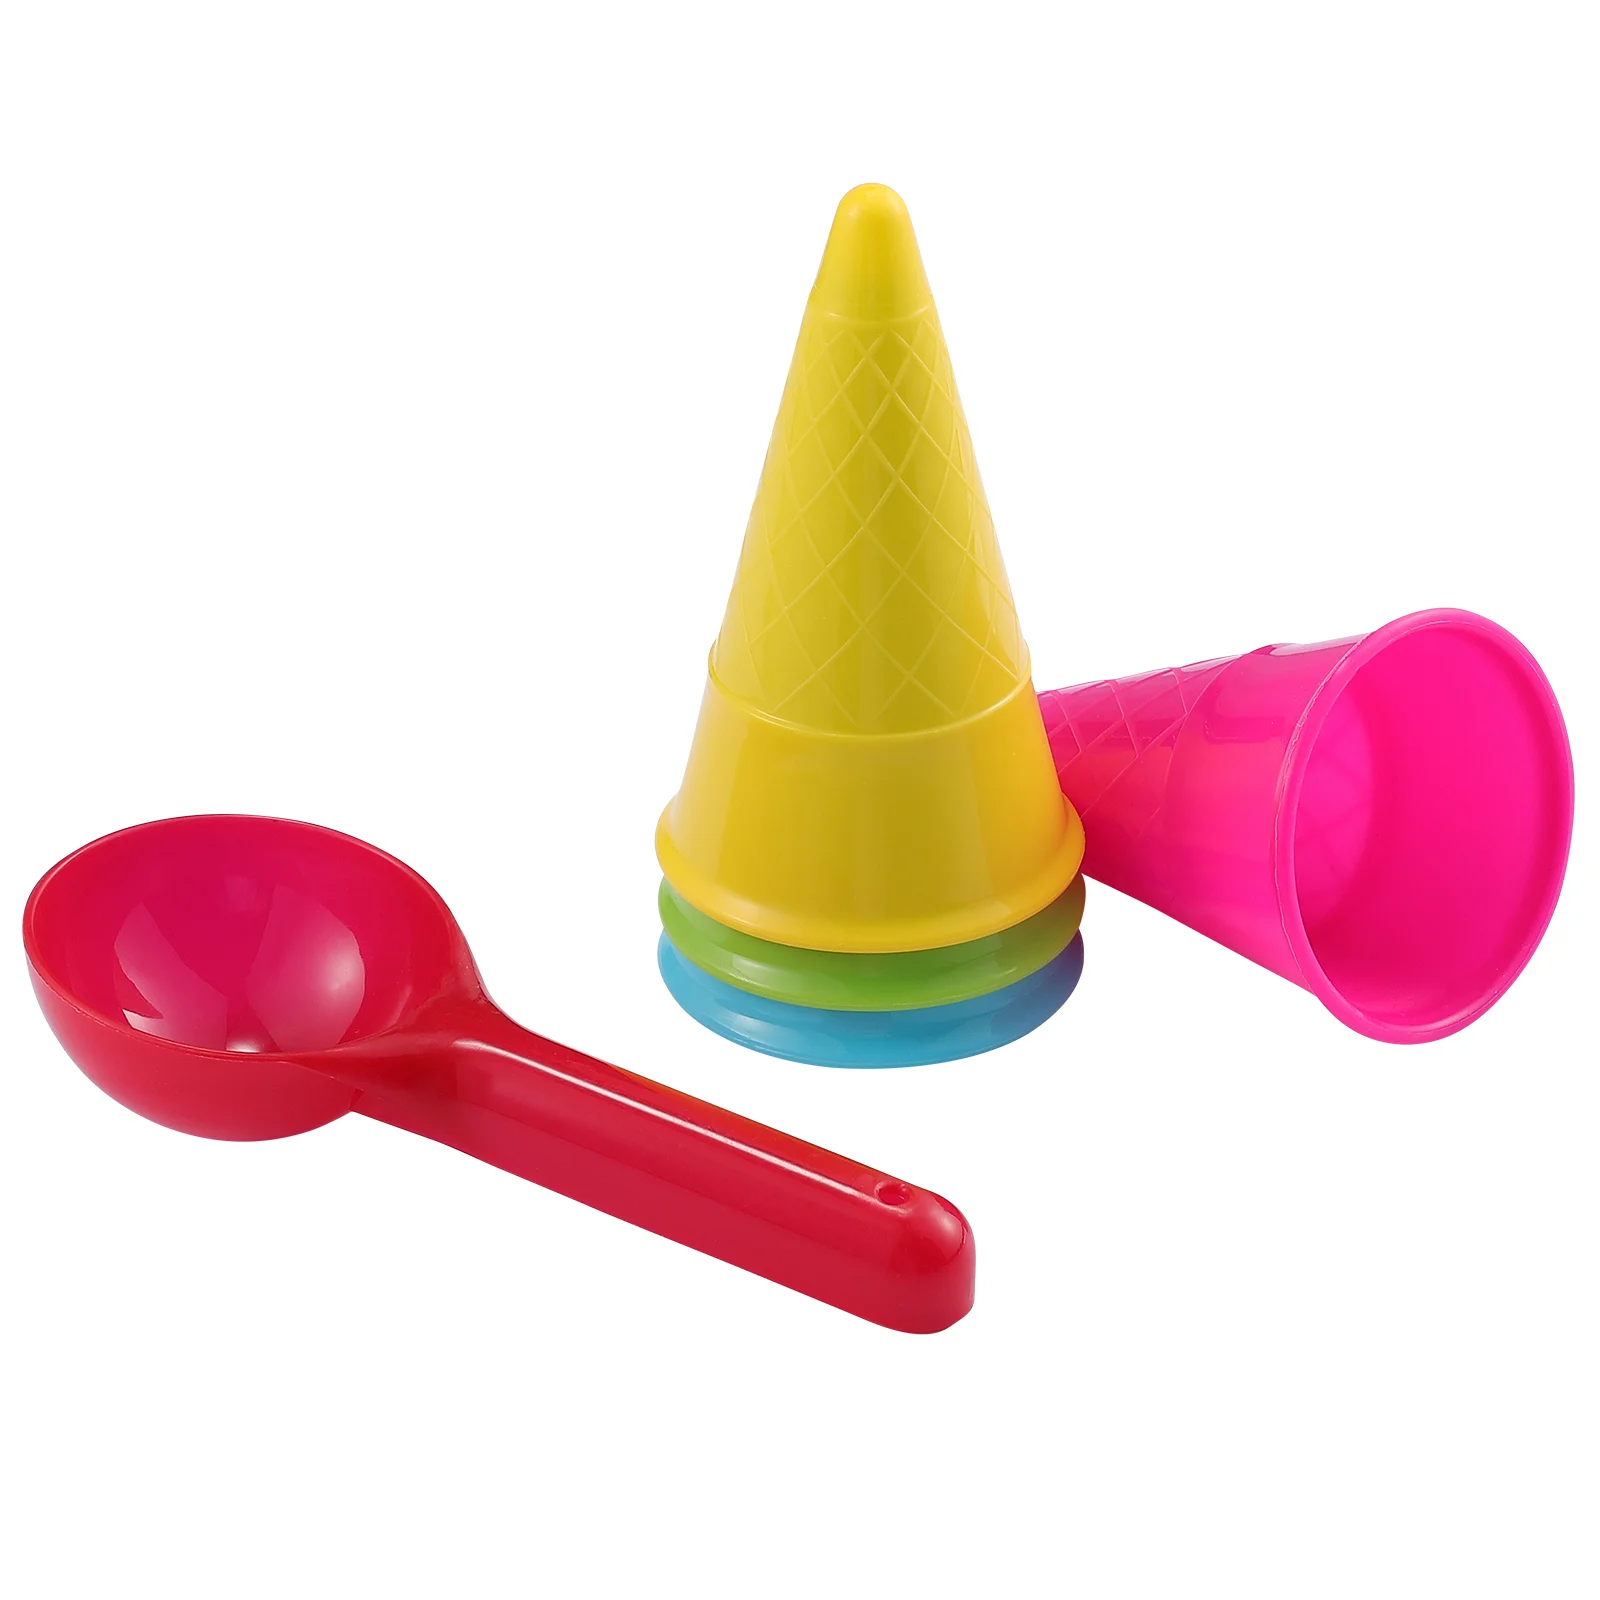 

Toyandona игровой дом пляжный мороженое конусное совок набор (случайный цвет 5 шт./упаковка) 2 упаковки для продажи детские игрушки игра с песком